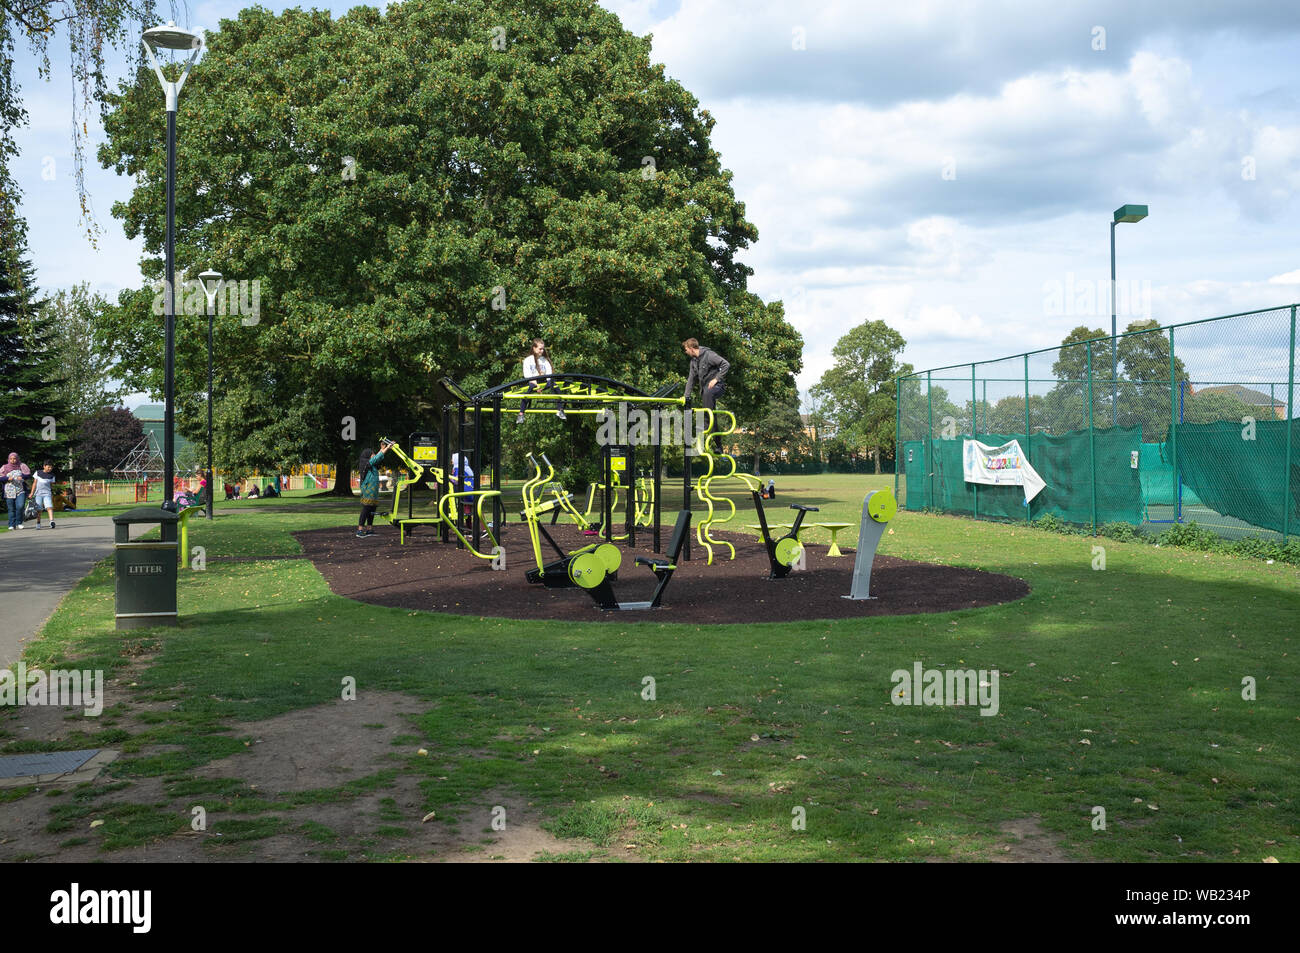 Sale Hill Park, Slough, Berkshire, Regno Unito - un parco giochi per bambini e ragazzi. La città è ben servita con spazi verdi e di aree di gioco. Foto Stock